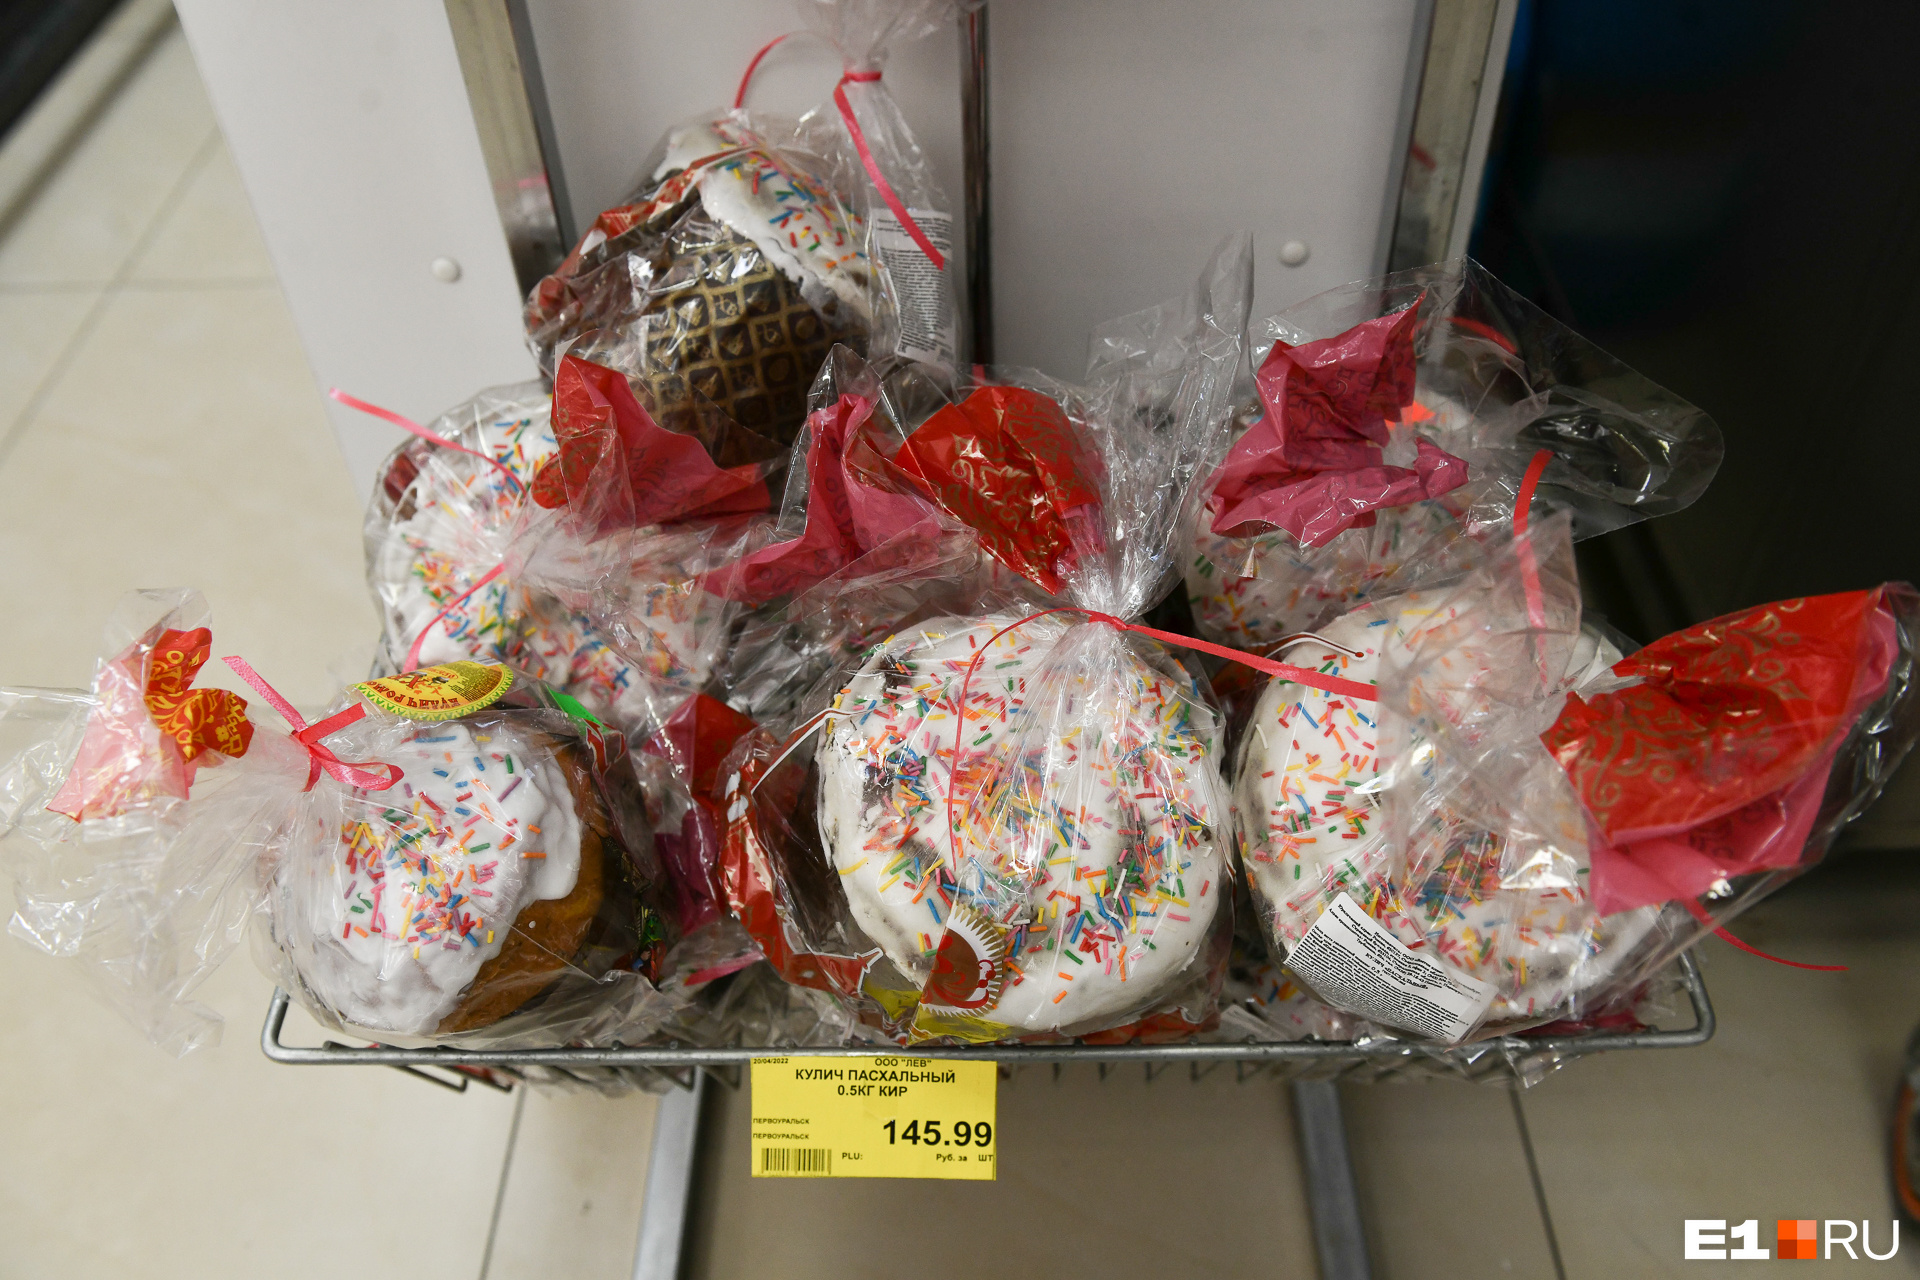 Полкило праздника в супермаркете стоит 146 рублей